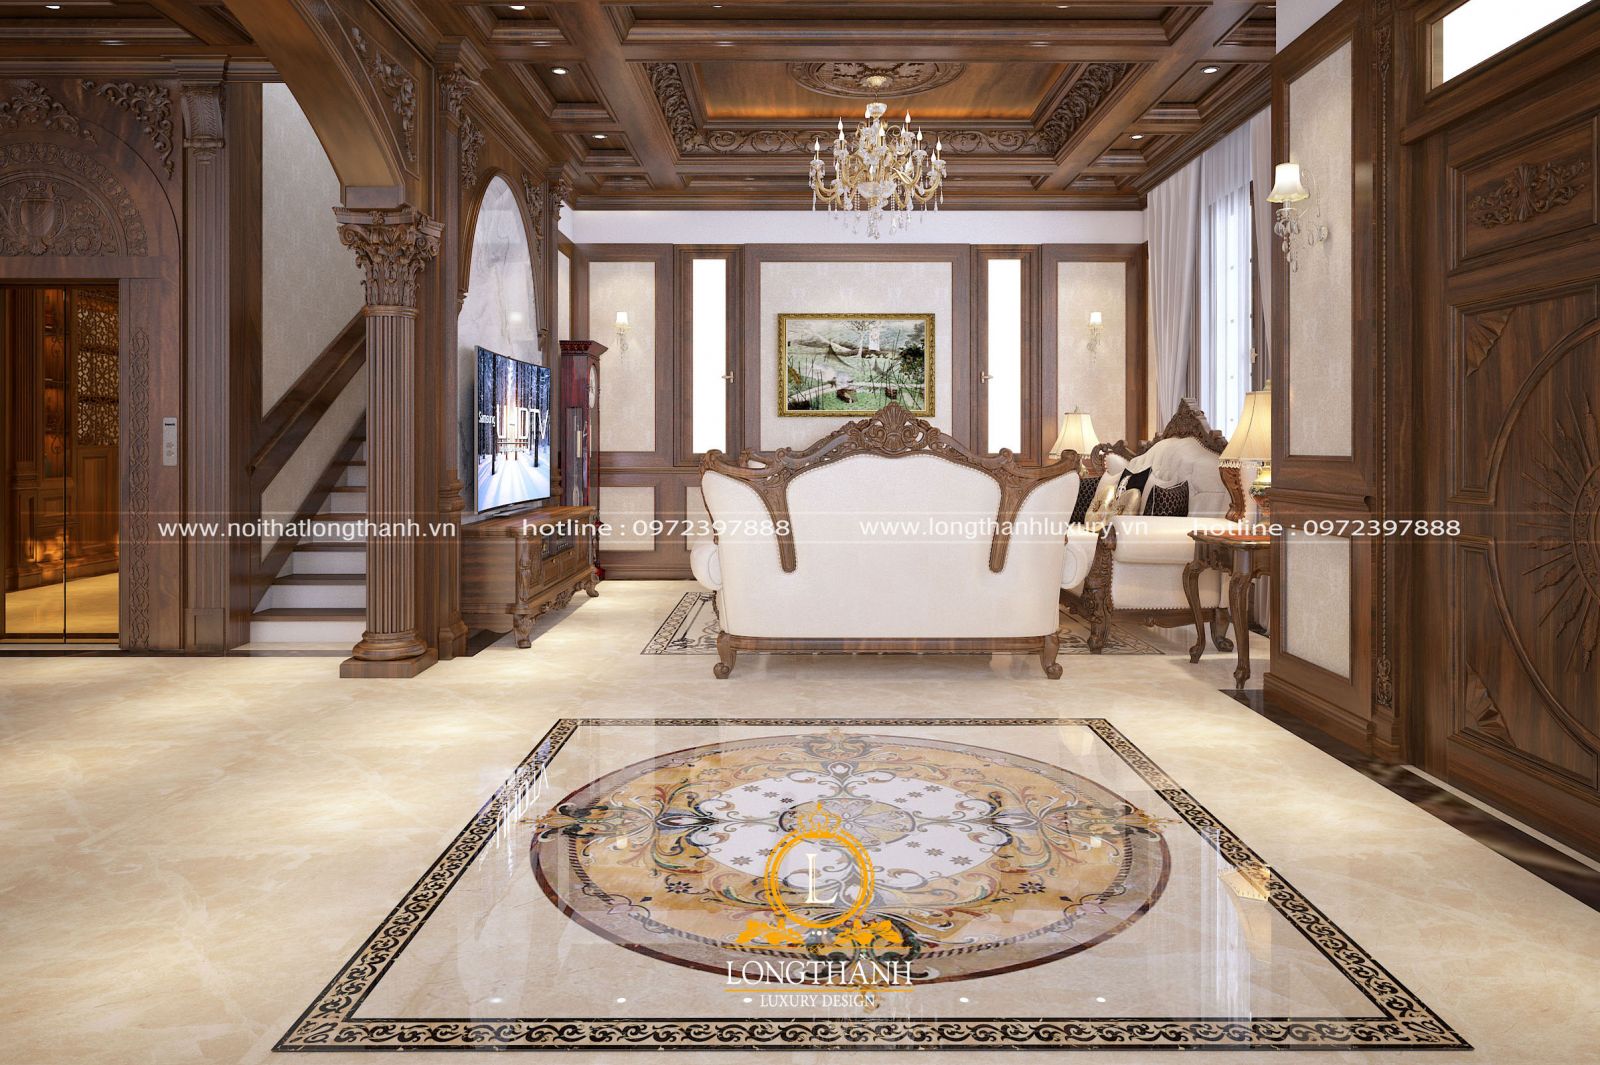 Phòng khách biệt thự đẹp được sử dụng ốp gỗ tự nhiên 